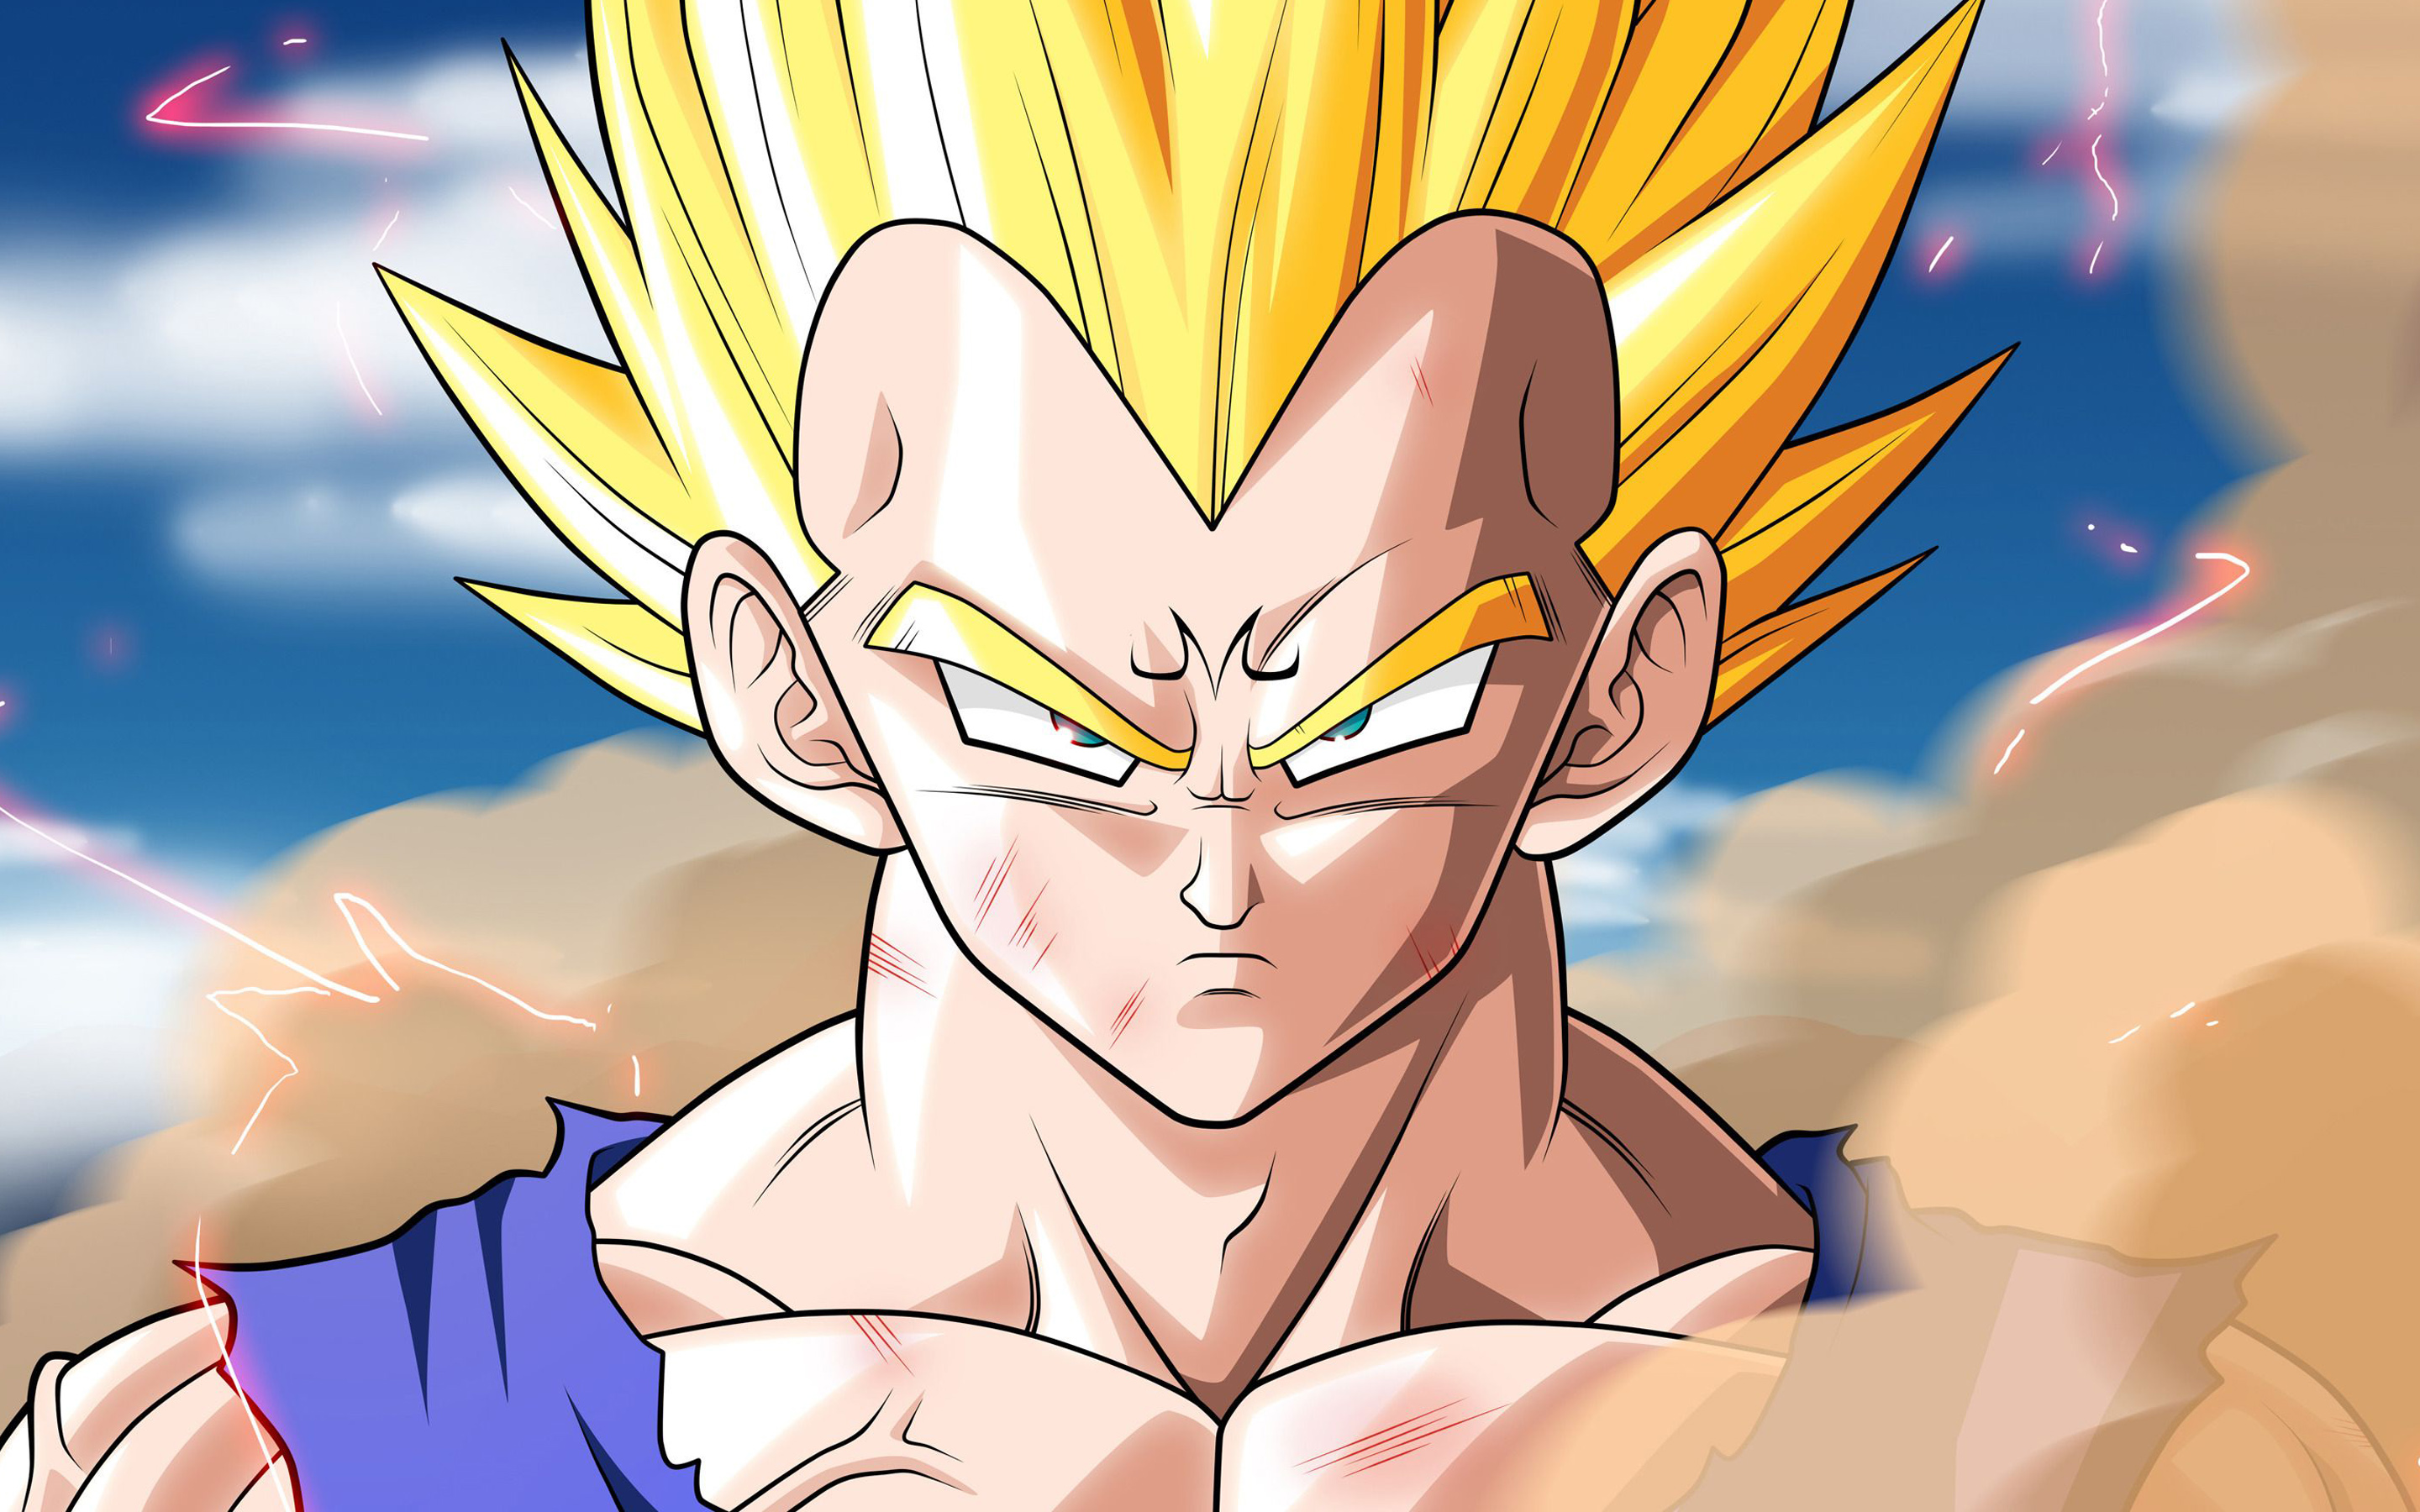 Golden Goku, close-up, fan art, Goku SSJ3, manga, Dragon Ball Super, DBS, S...